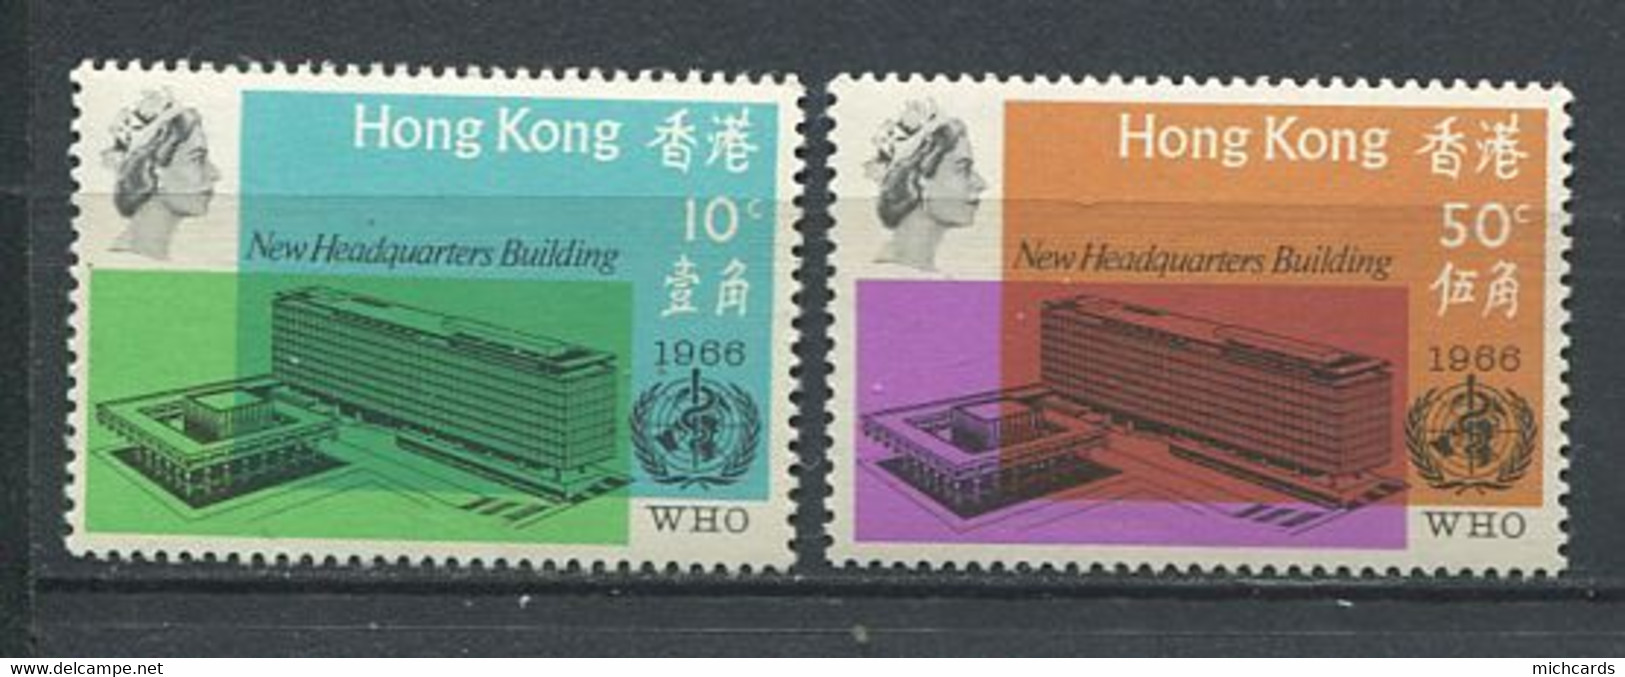 232 HONG KONG 1966 - Yvert 220/21 - Siege Sante A Geneve  - Neuf ** (MNH) Sans Trace De Charniere - Neufs